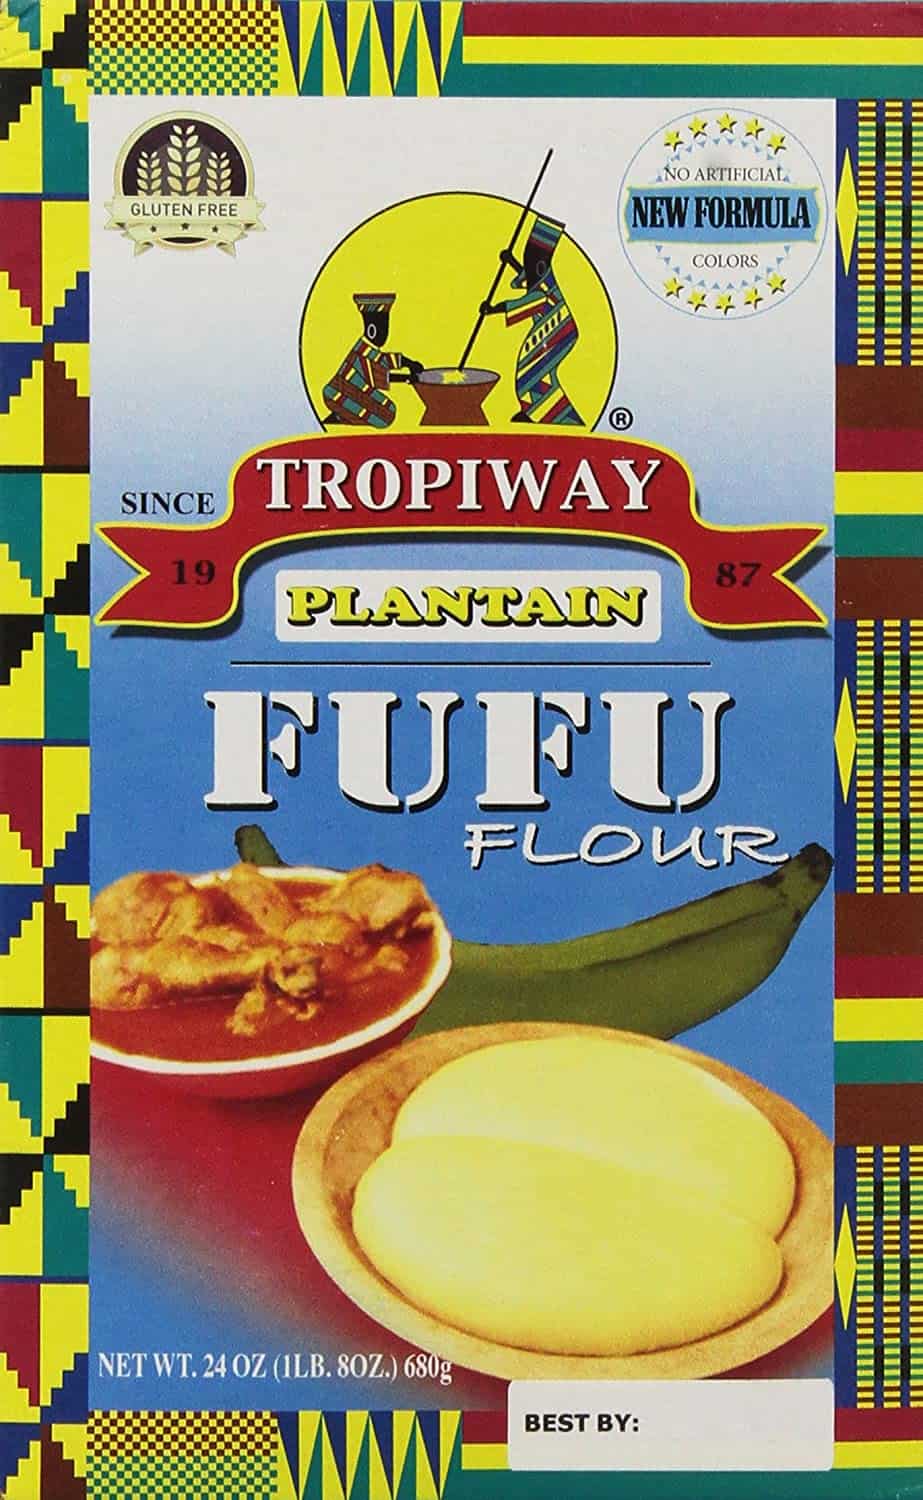 Plantain Fufu Flour